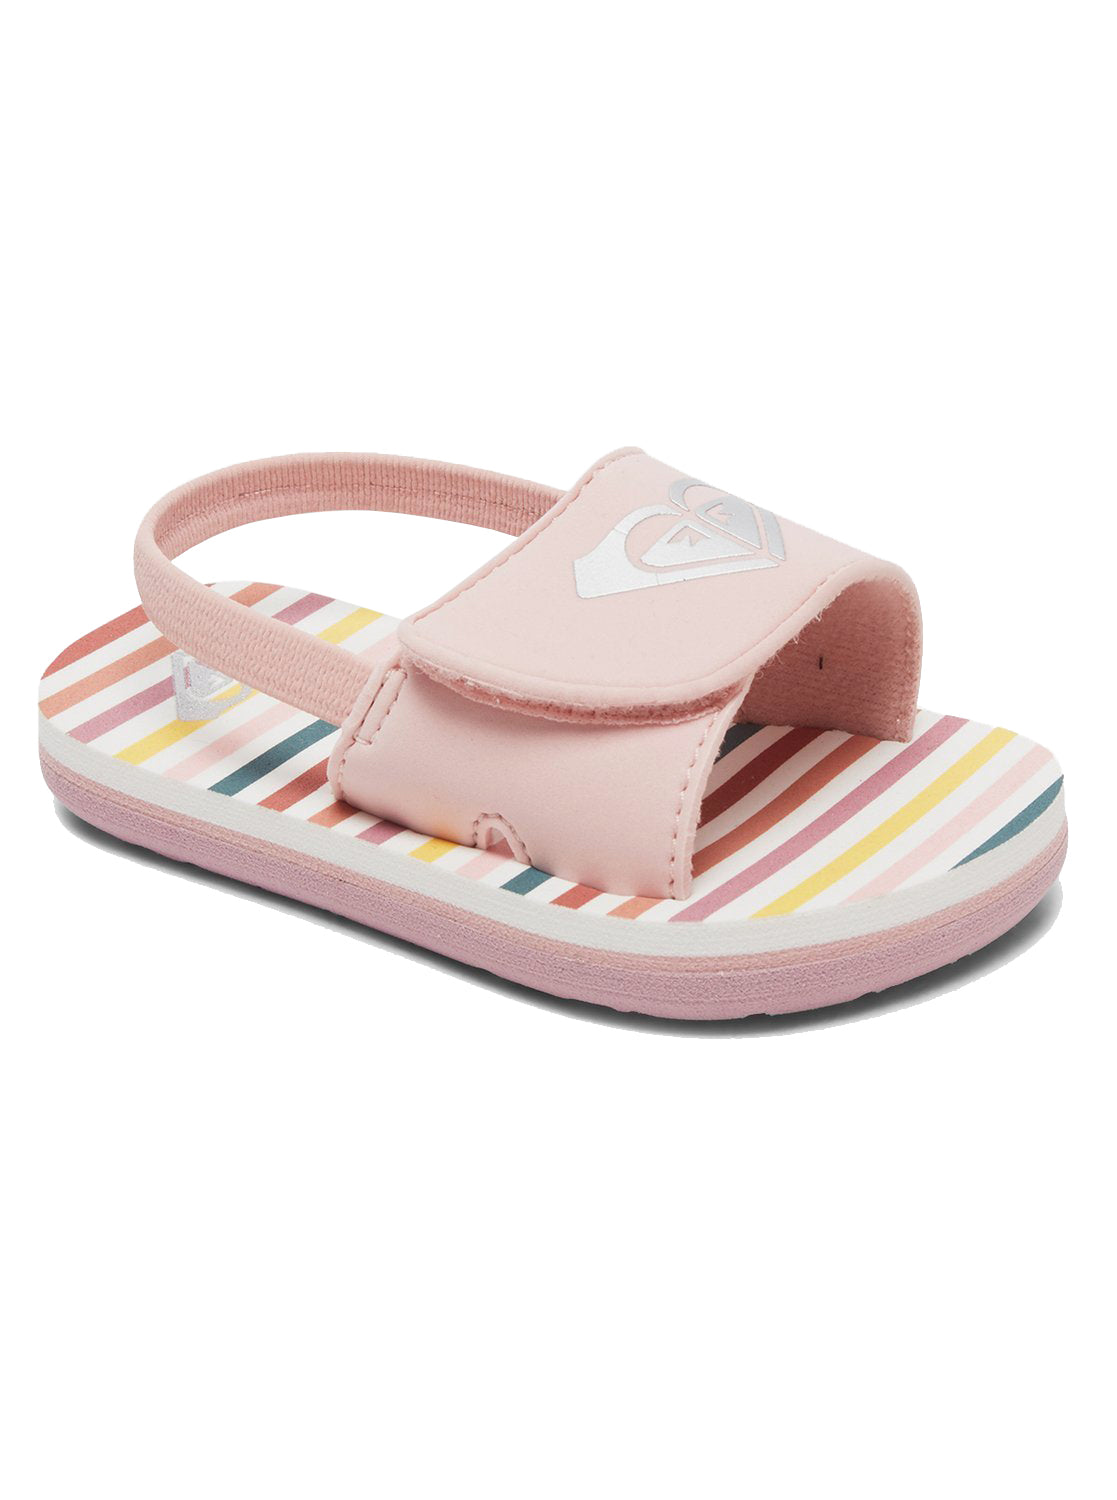 Roxy Finn Toddler Sandal PW0-Pink-White 8 C